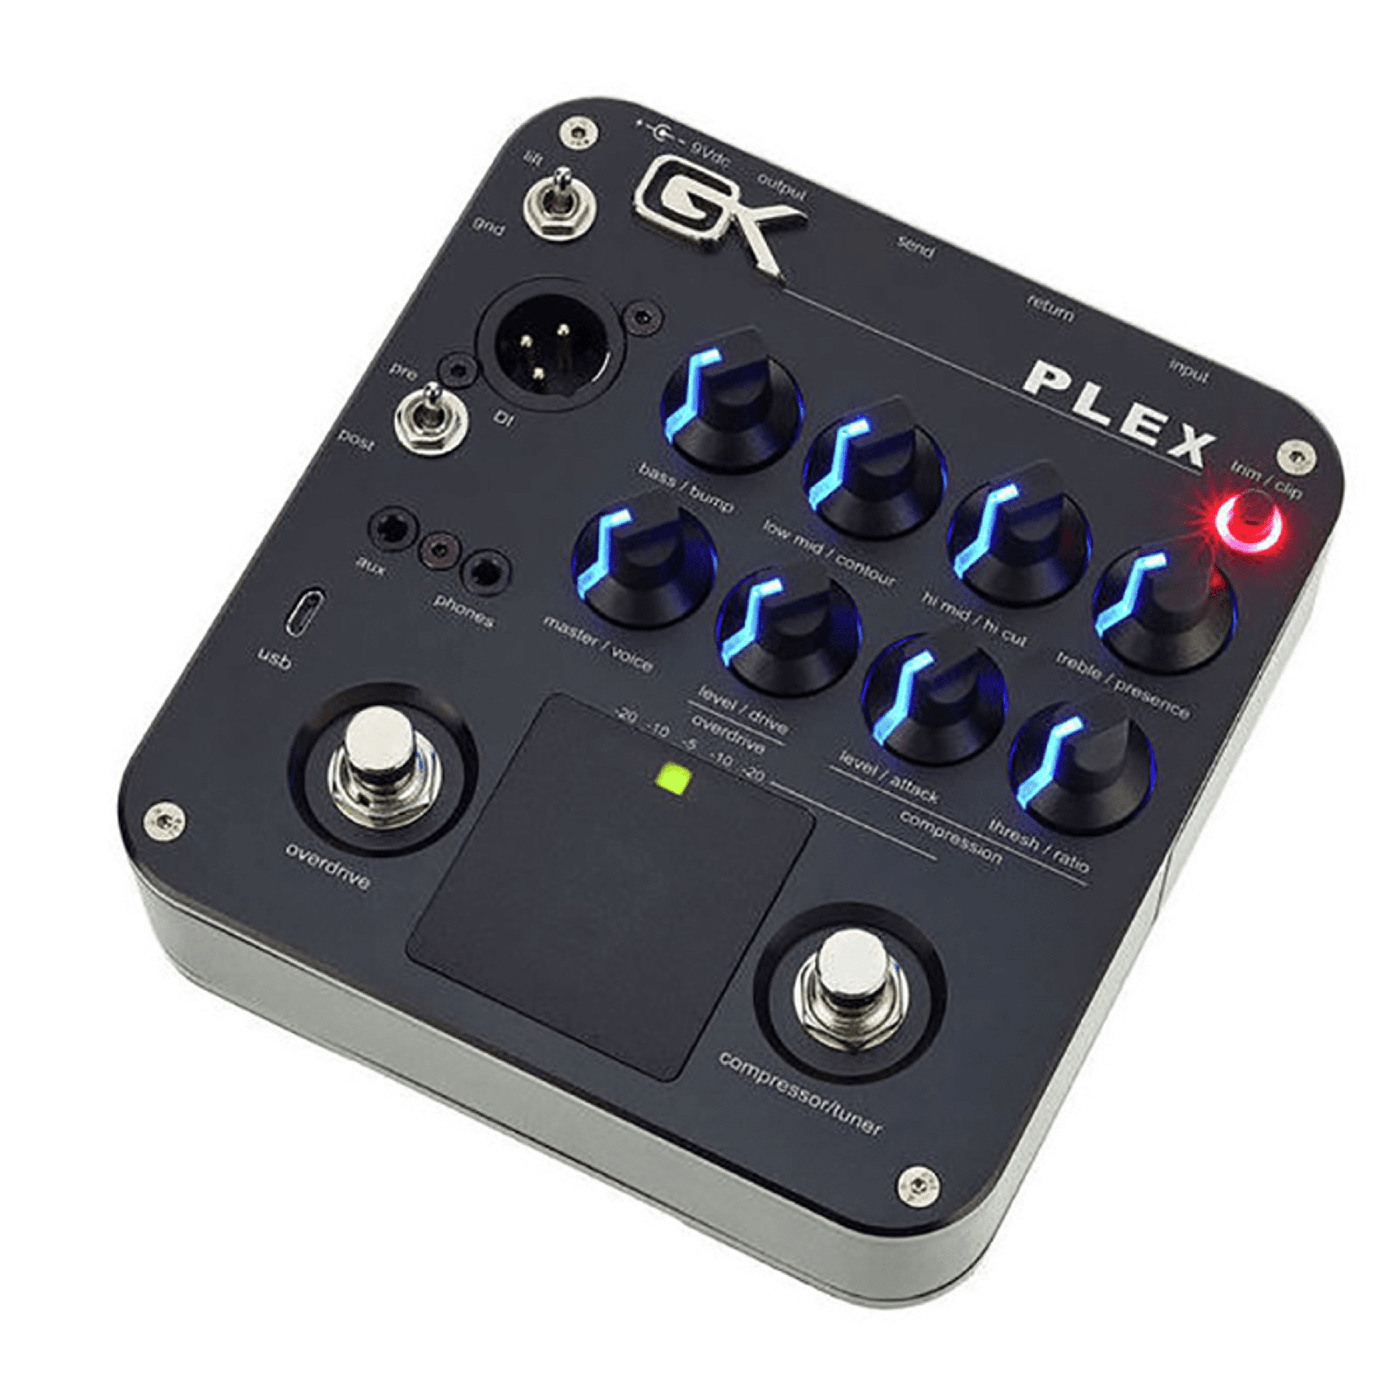 Gallien-Krueger PLEX - El pedal de bajo Gallien-Krueger PLEX Preamp ofrece un increíble arsenal de herramientas. Un ecualizador activo de 4 bandas brinda infinitas oportunidades para modelar el sonido. El control Contour de PLEX hará que los fans del lege